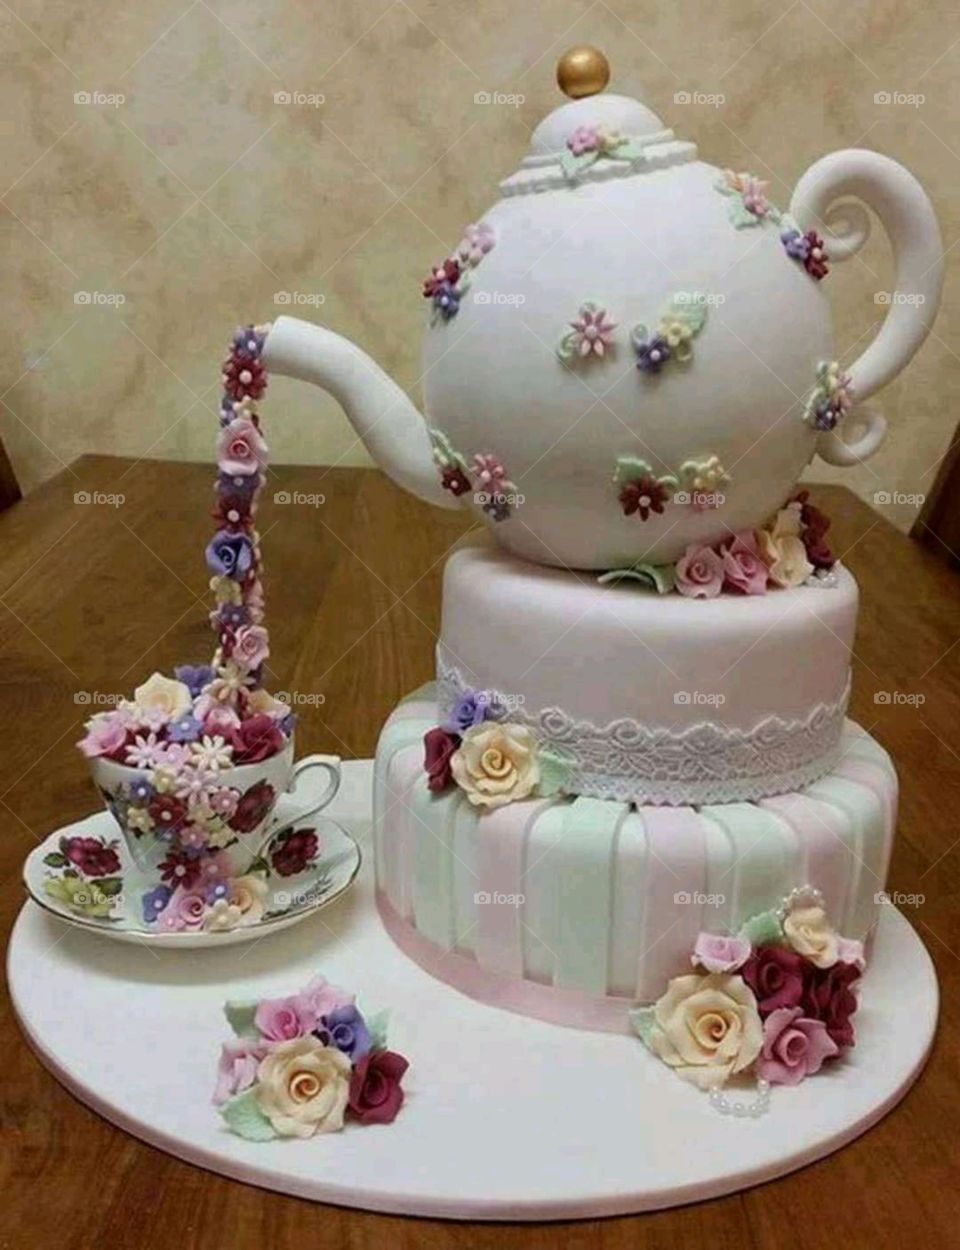 Amazing cake